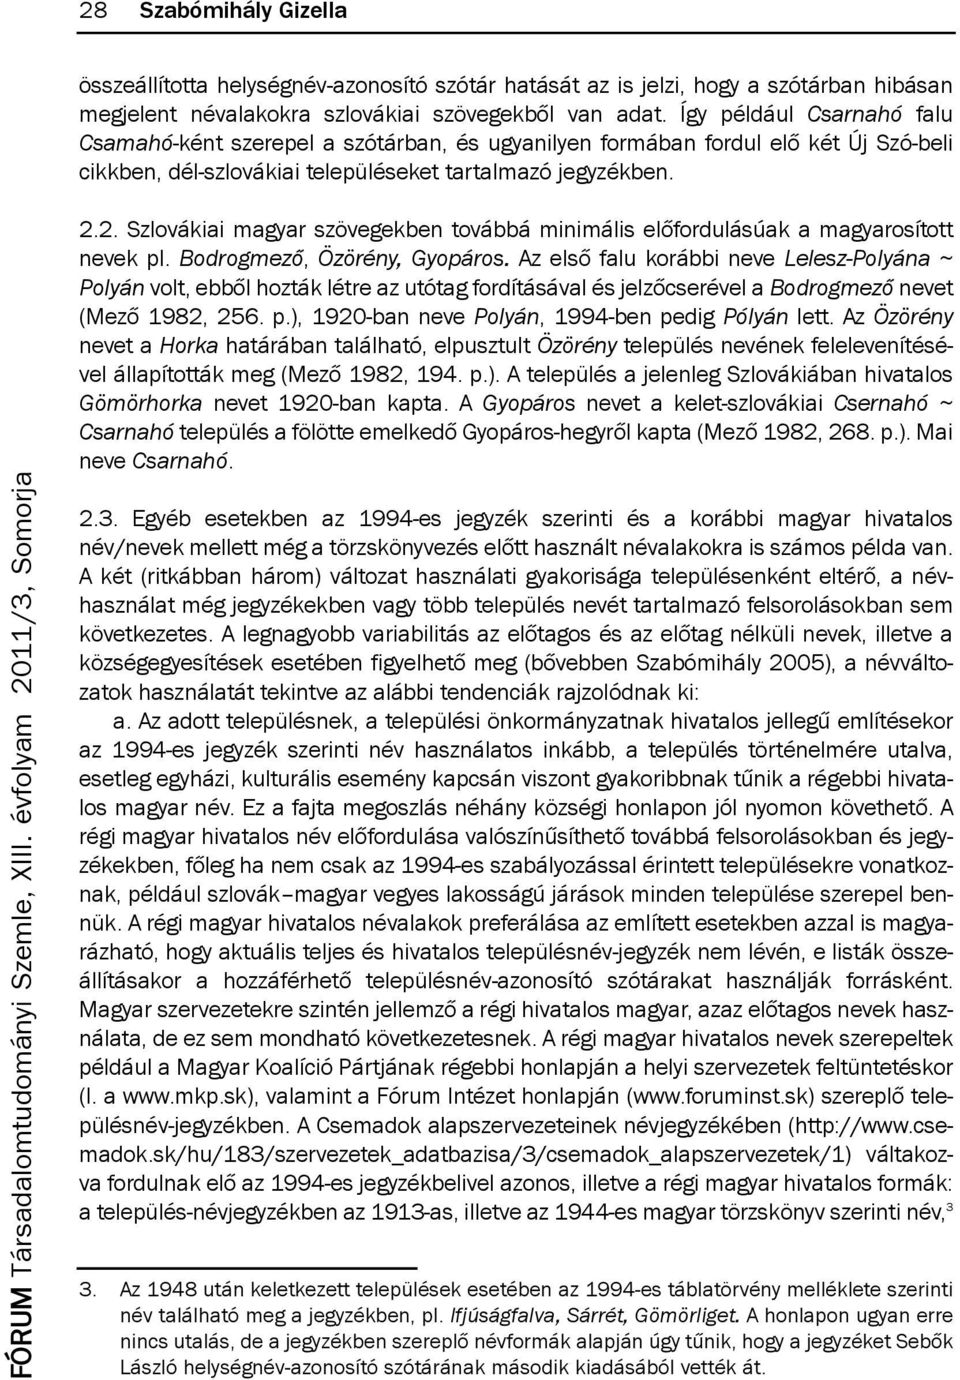 2. szlovákiai magyar szövegekben továbbá minimális előfordulásúak a magyarosított nevek pl. Bodrogmező, Özörény, Gyopáros.